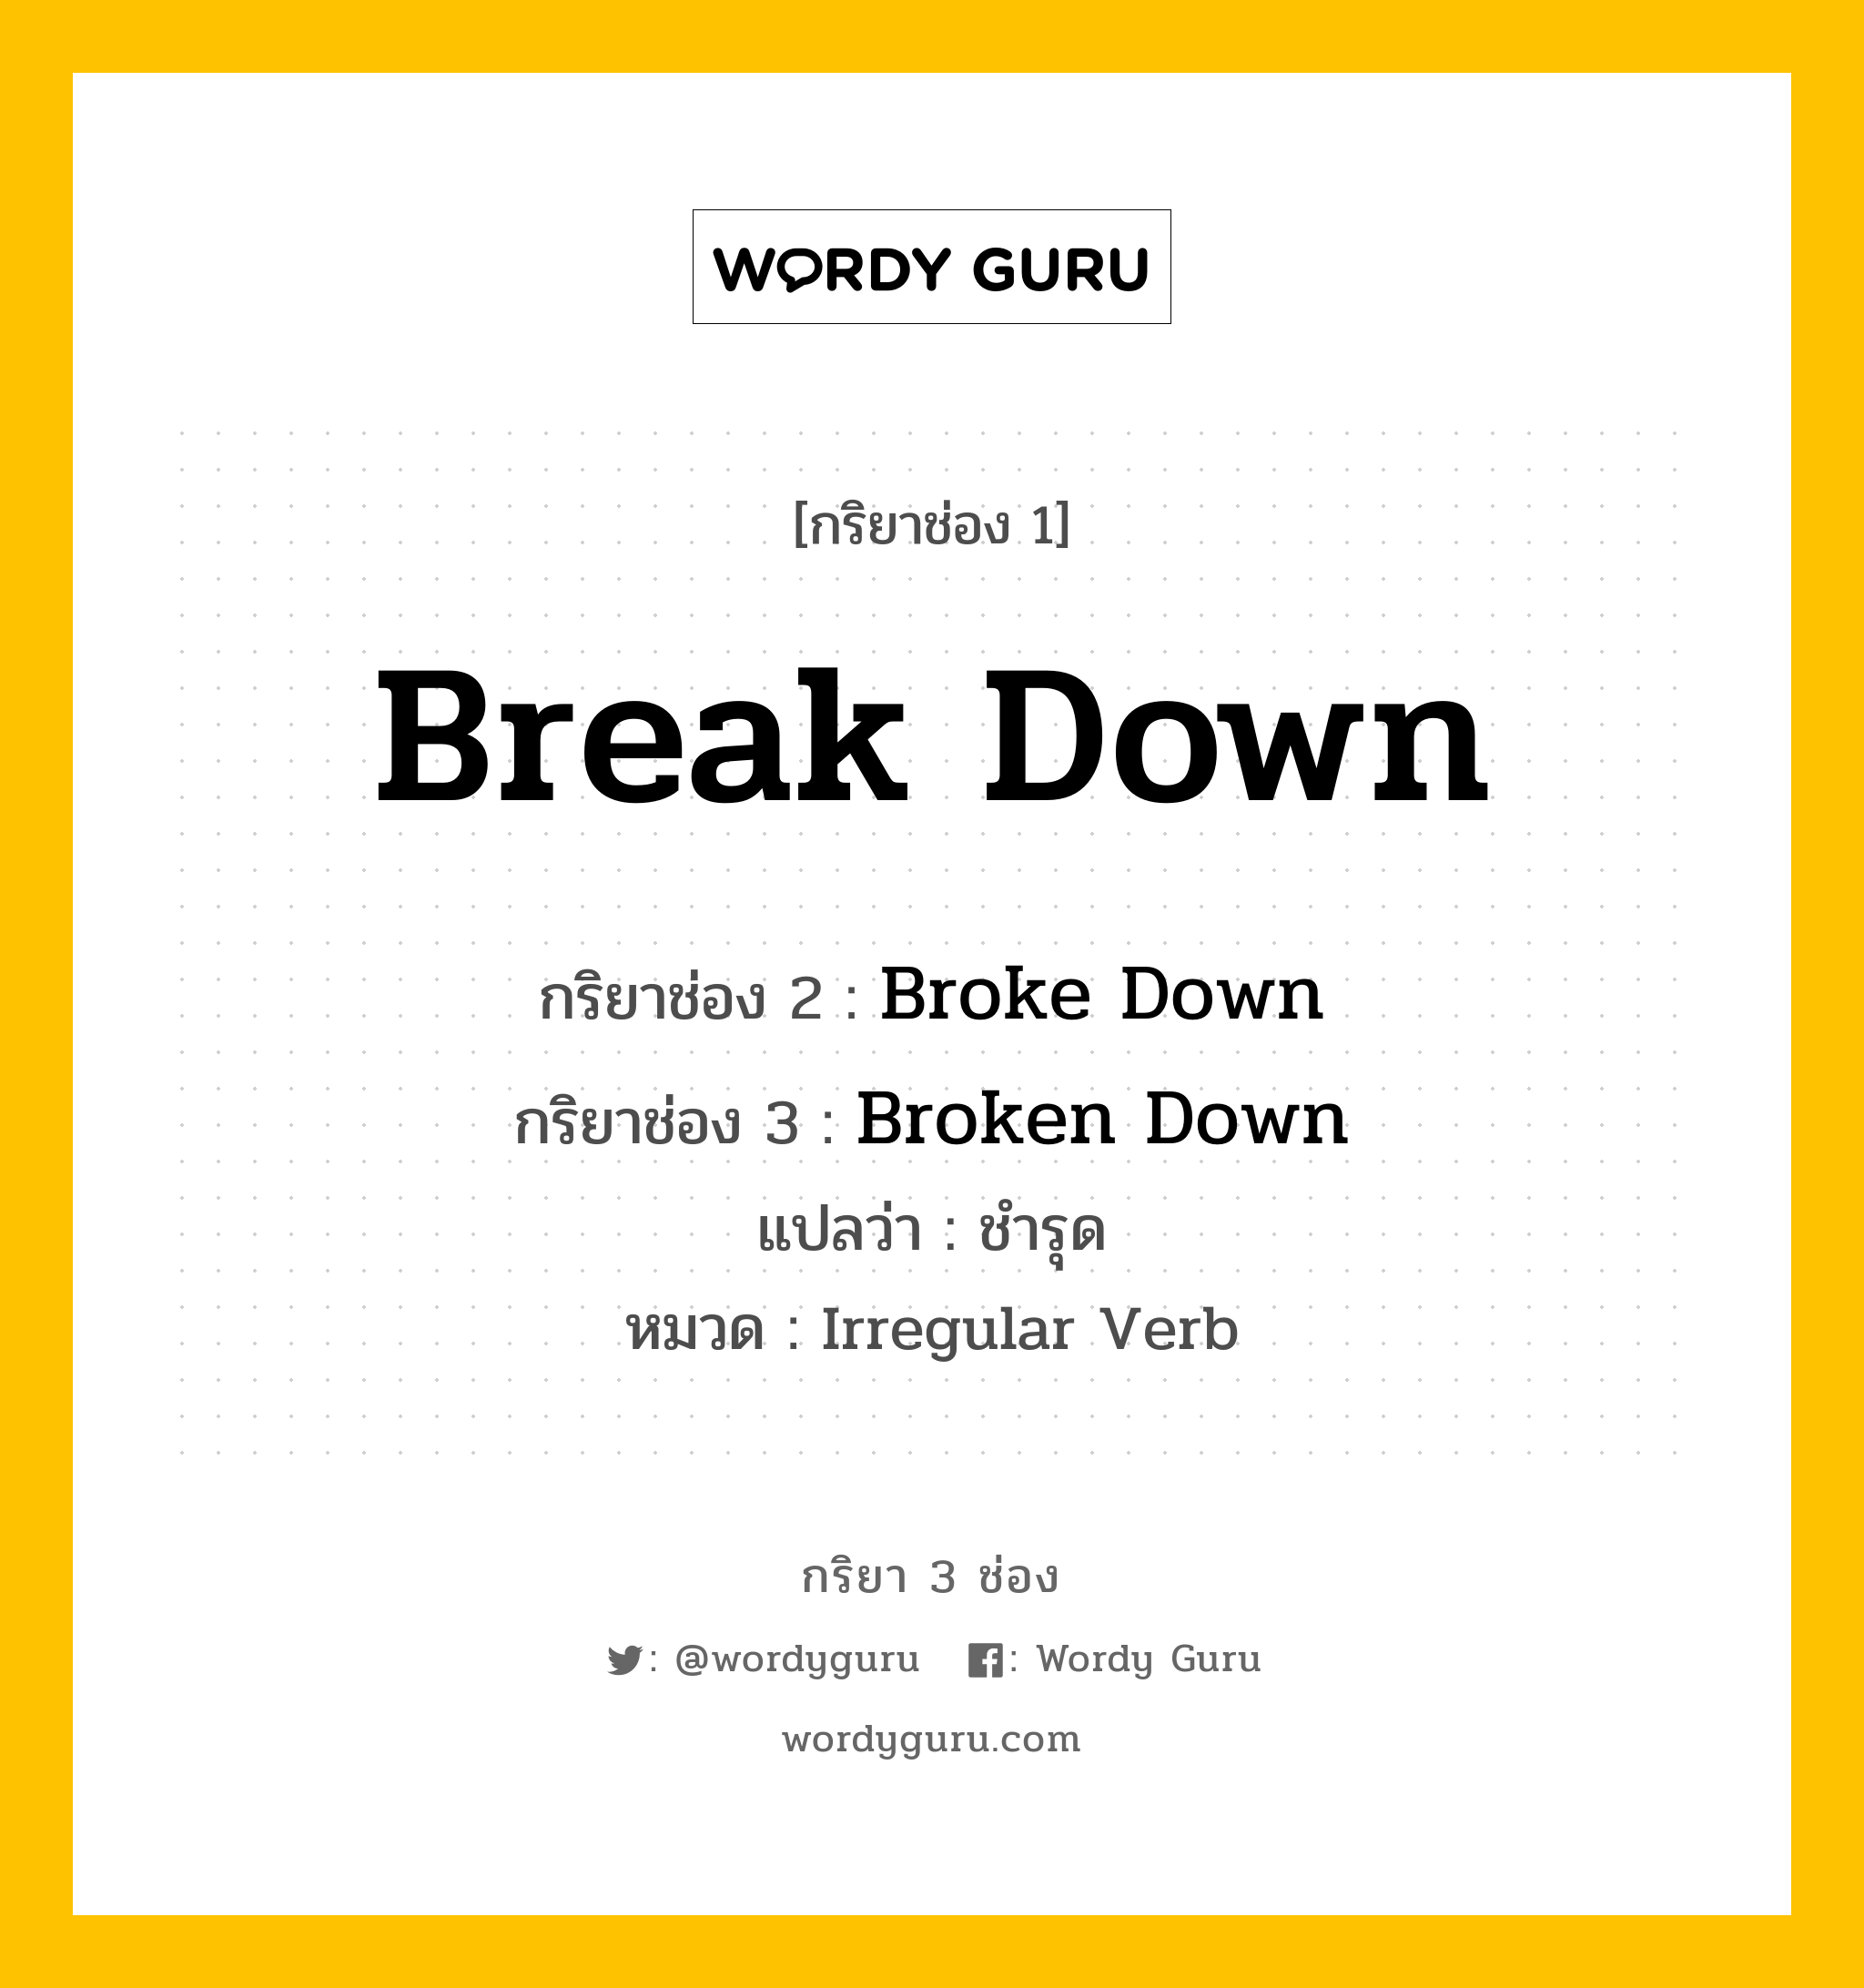 Break Down มีกริยา 3 ช่องอะไรบ้าง? คำศัพท์ในกลุ่มประเภท Irregular Verb, กริยาช่อง 1 Break Down กริยาช่อง 2 Broke Down กริยาช่อง 3 Broken Down แปลว่า ชำรุด หมวด Irregular Verb หมวด Irregular Verb